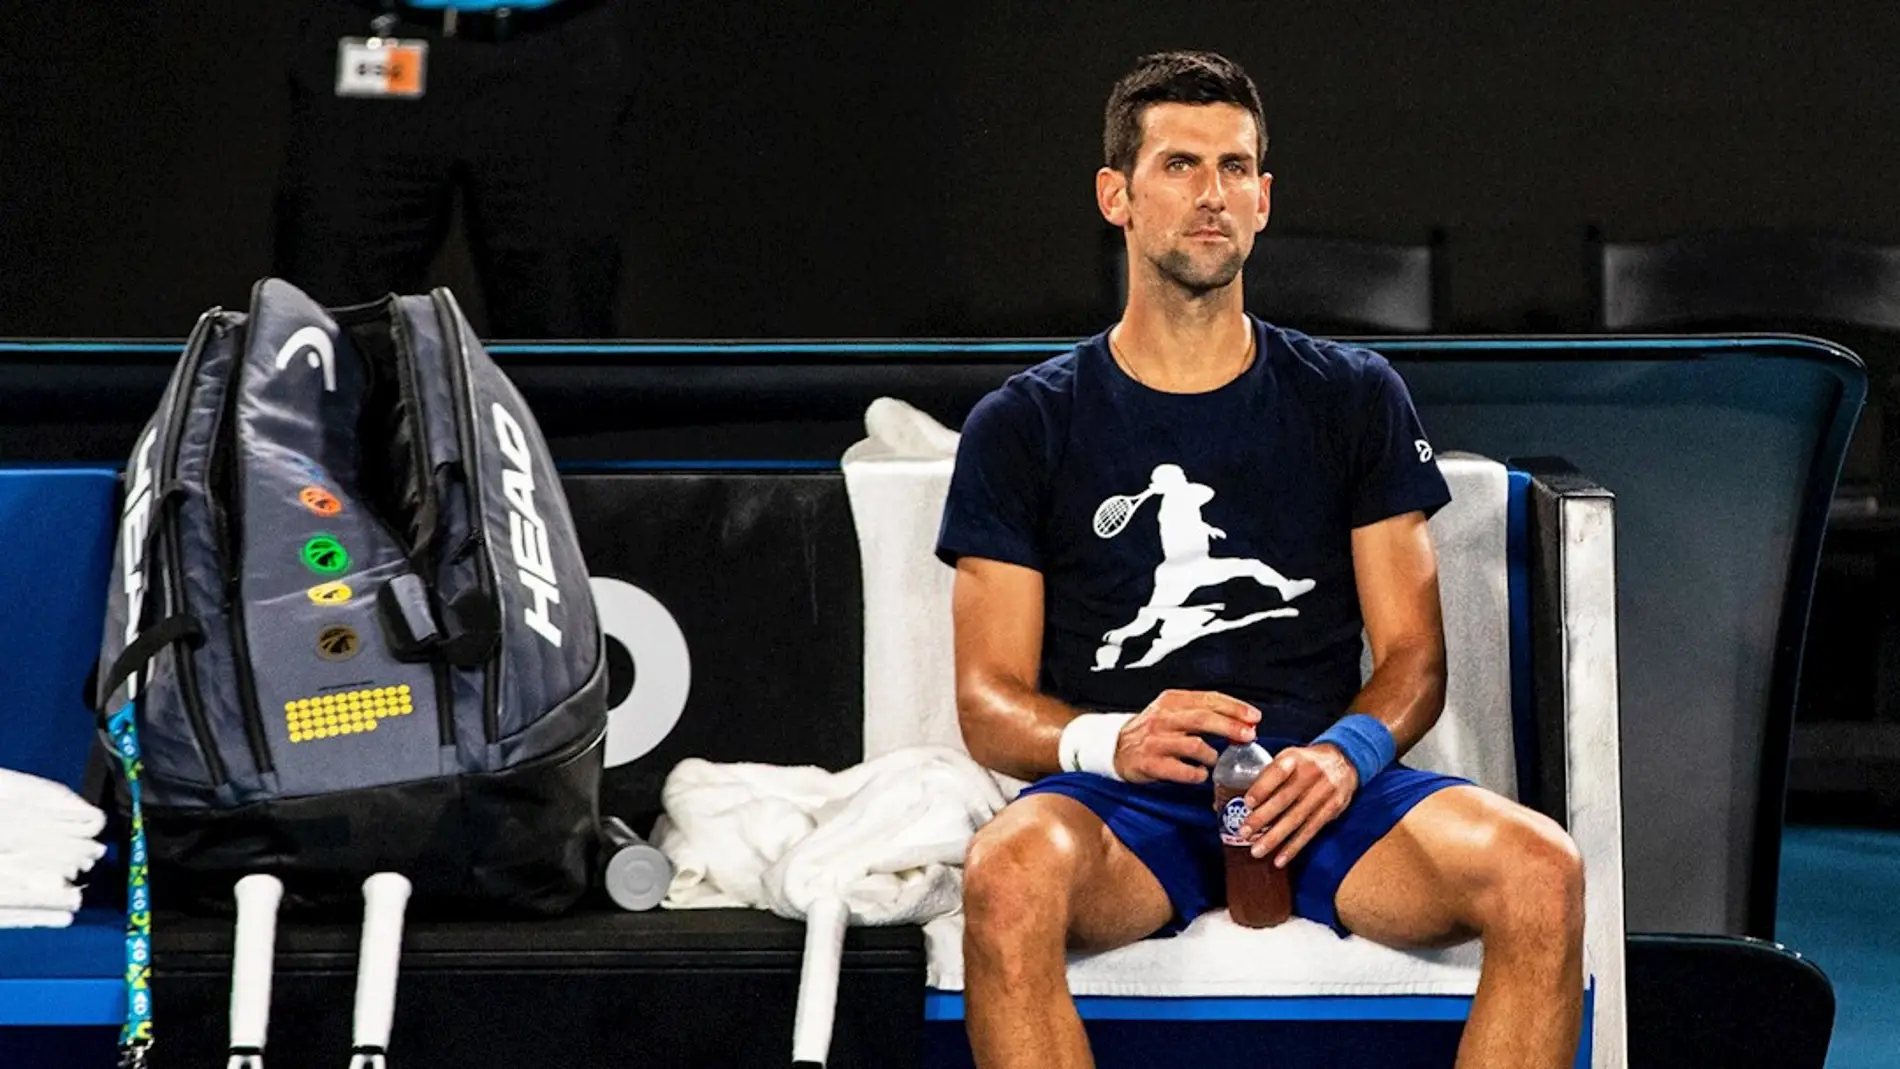 El tenista serbio, Novak Djokovic, durante un partido en una imagen de archivo